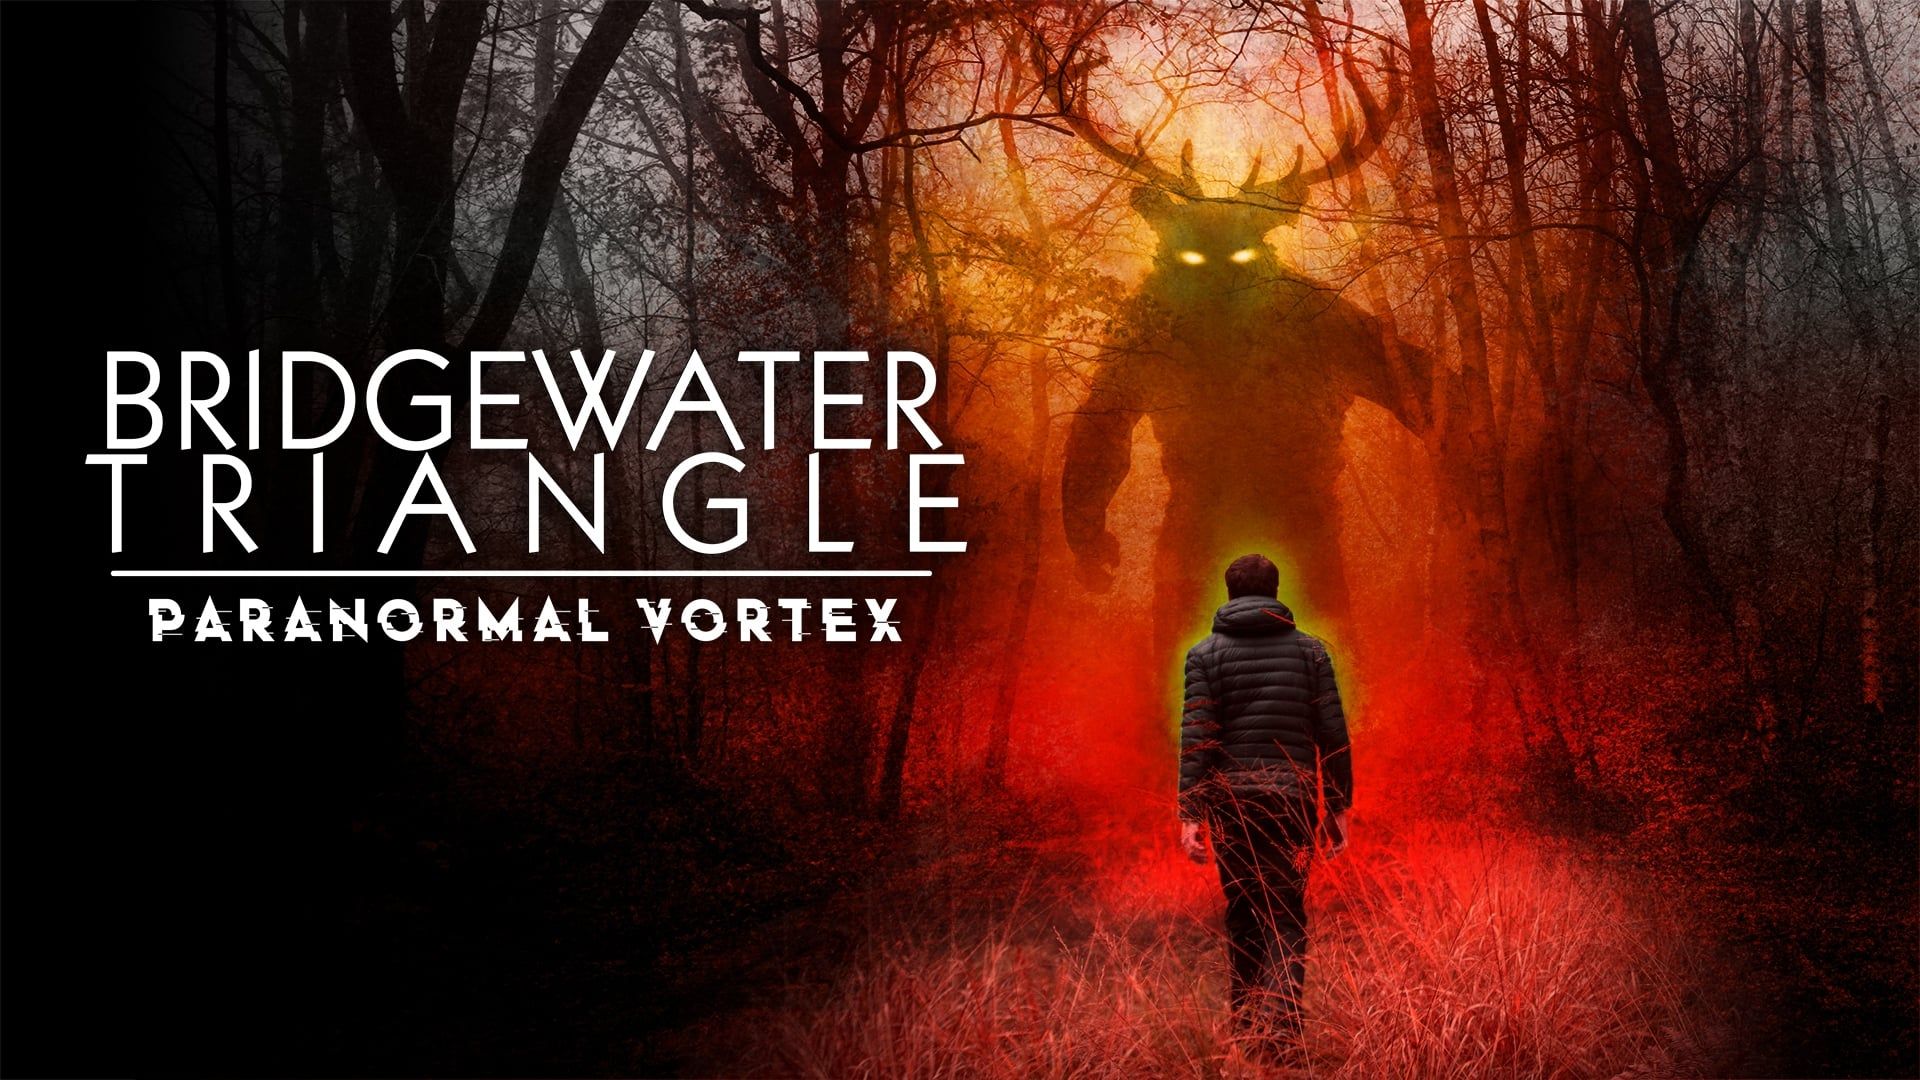 Bridgewater Triangle: Paranormal Vortex background